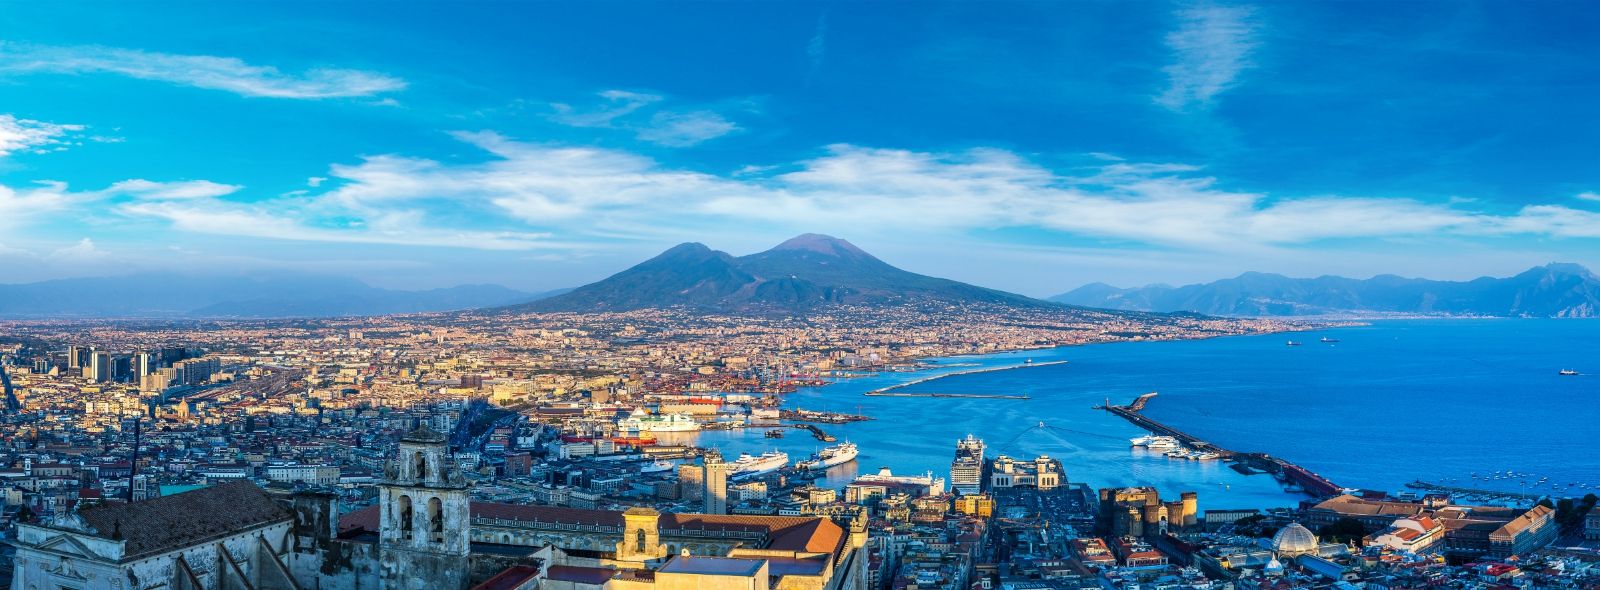 Cosa vedere a Napoli in tre giorni